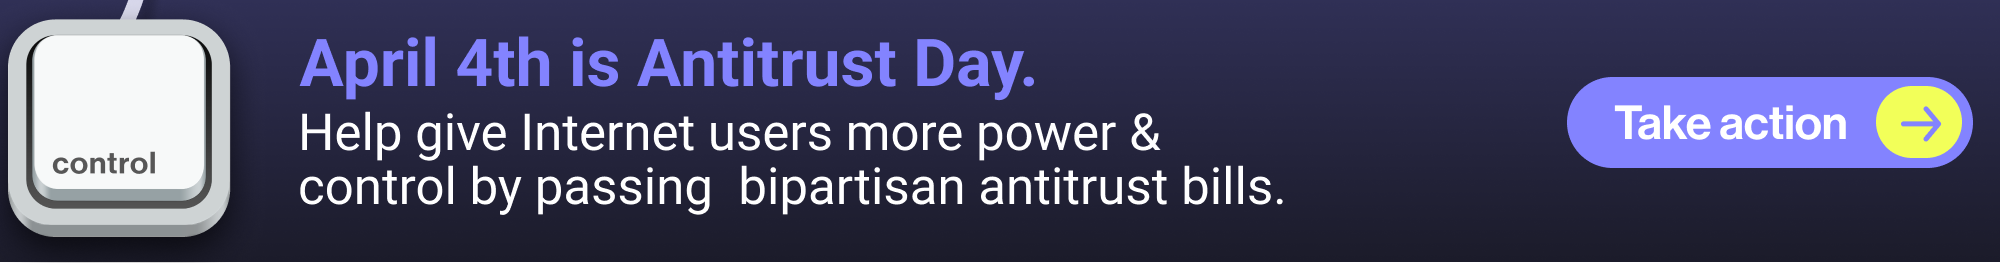 Antitrust Day banner